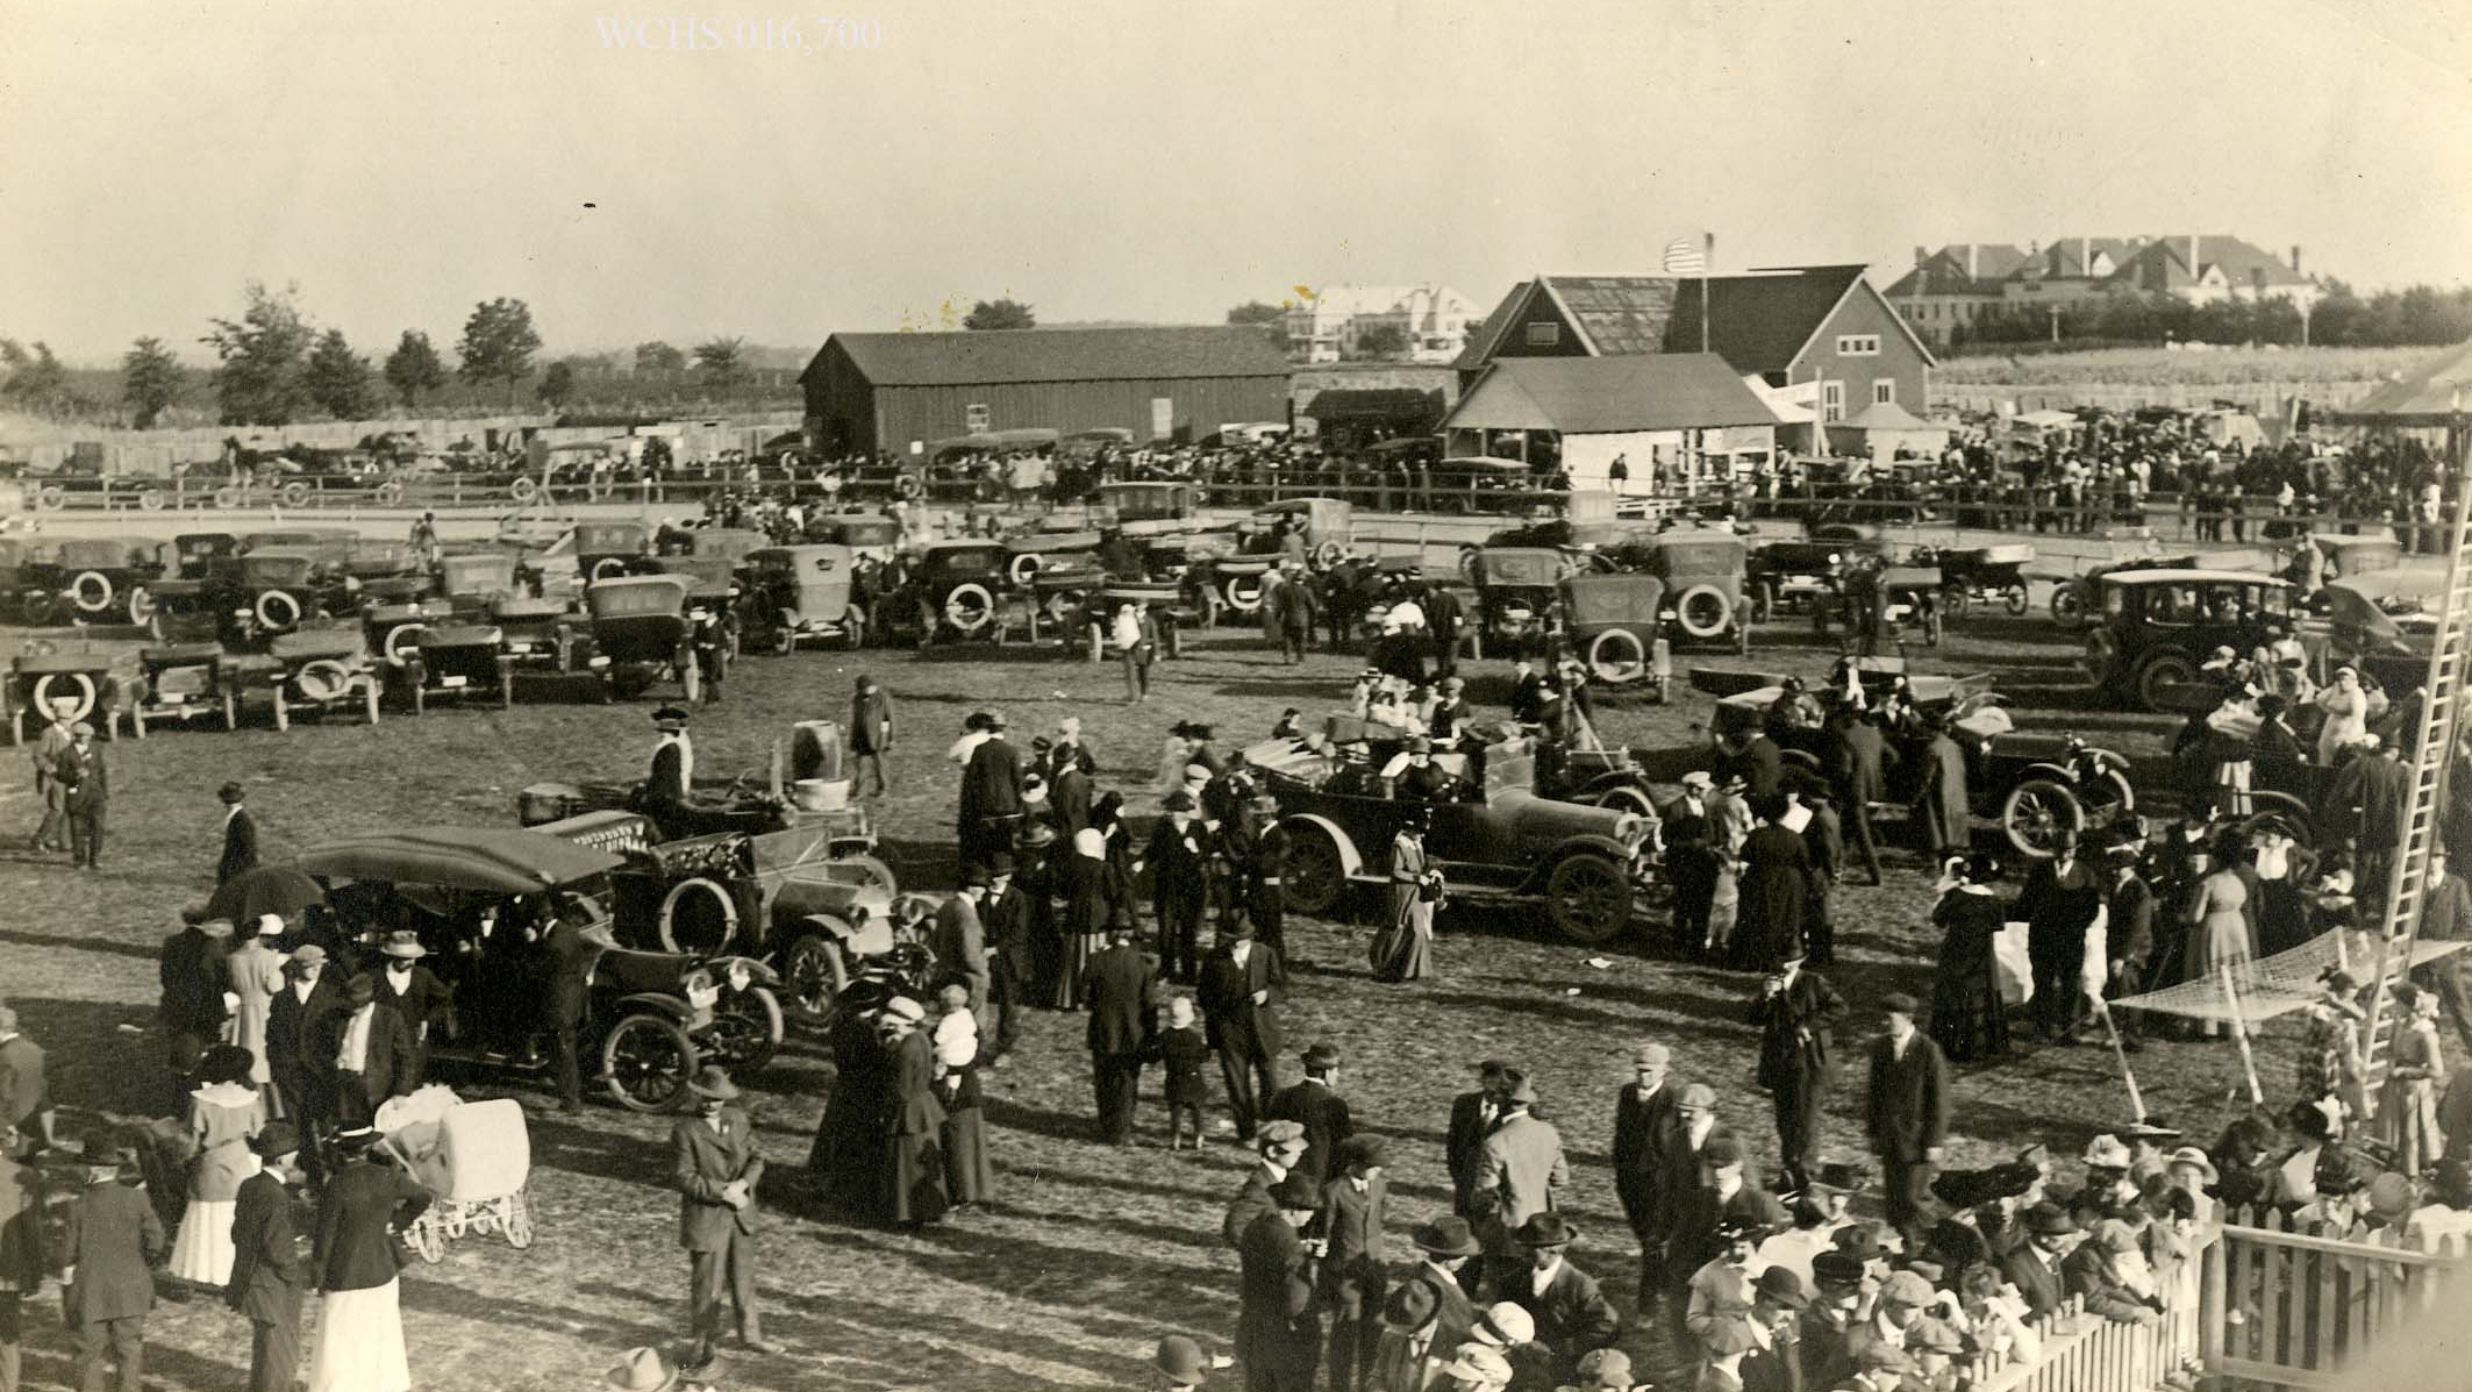 The Washington County Fair Through the Decades